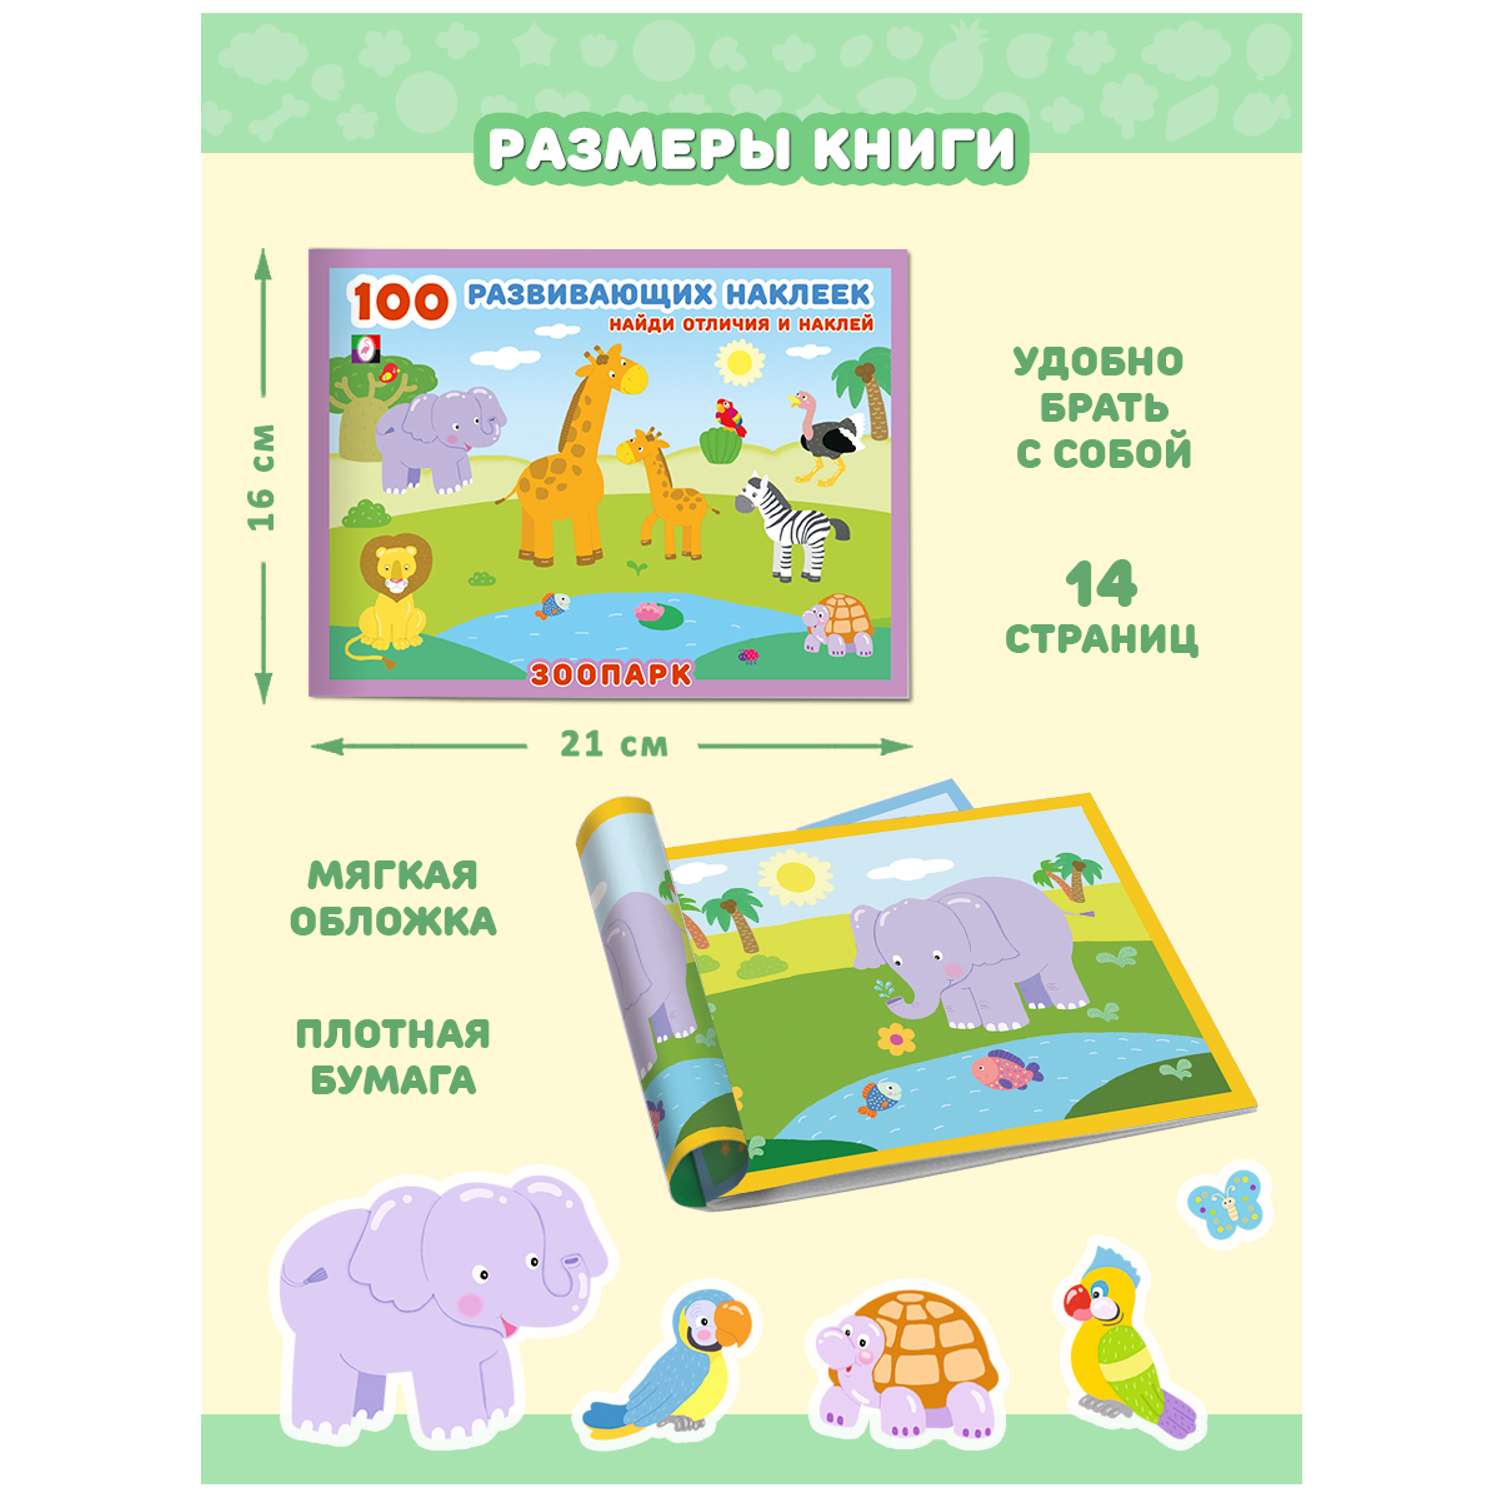 Набор из 2-х книг Фламинго 100 развивающих наклеек для малышей Найди отличия и наклей для детей Развитие ребенка - фото 7